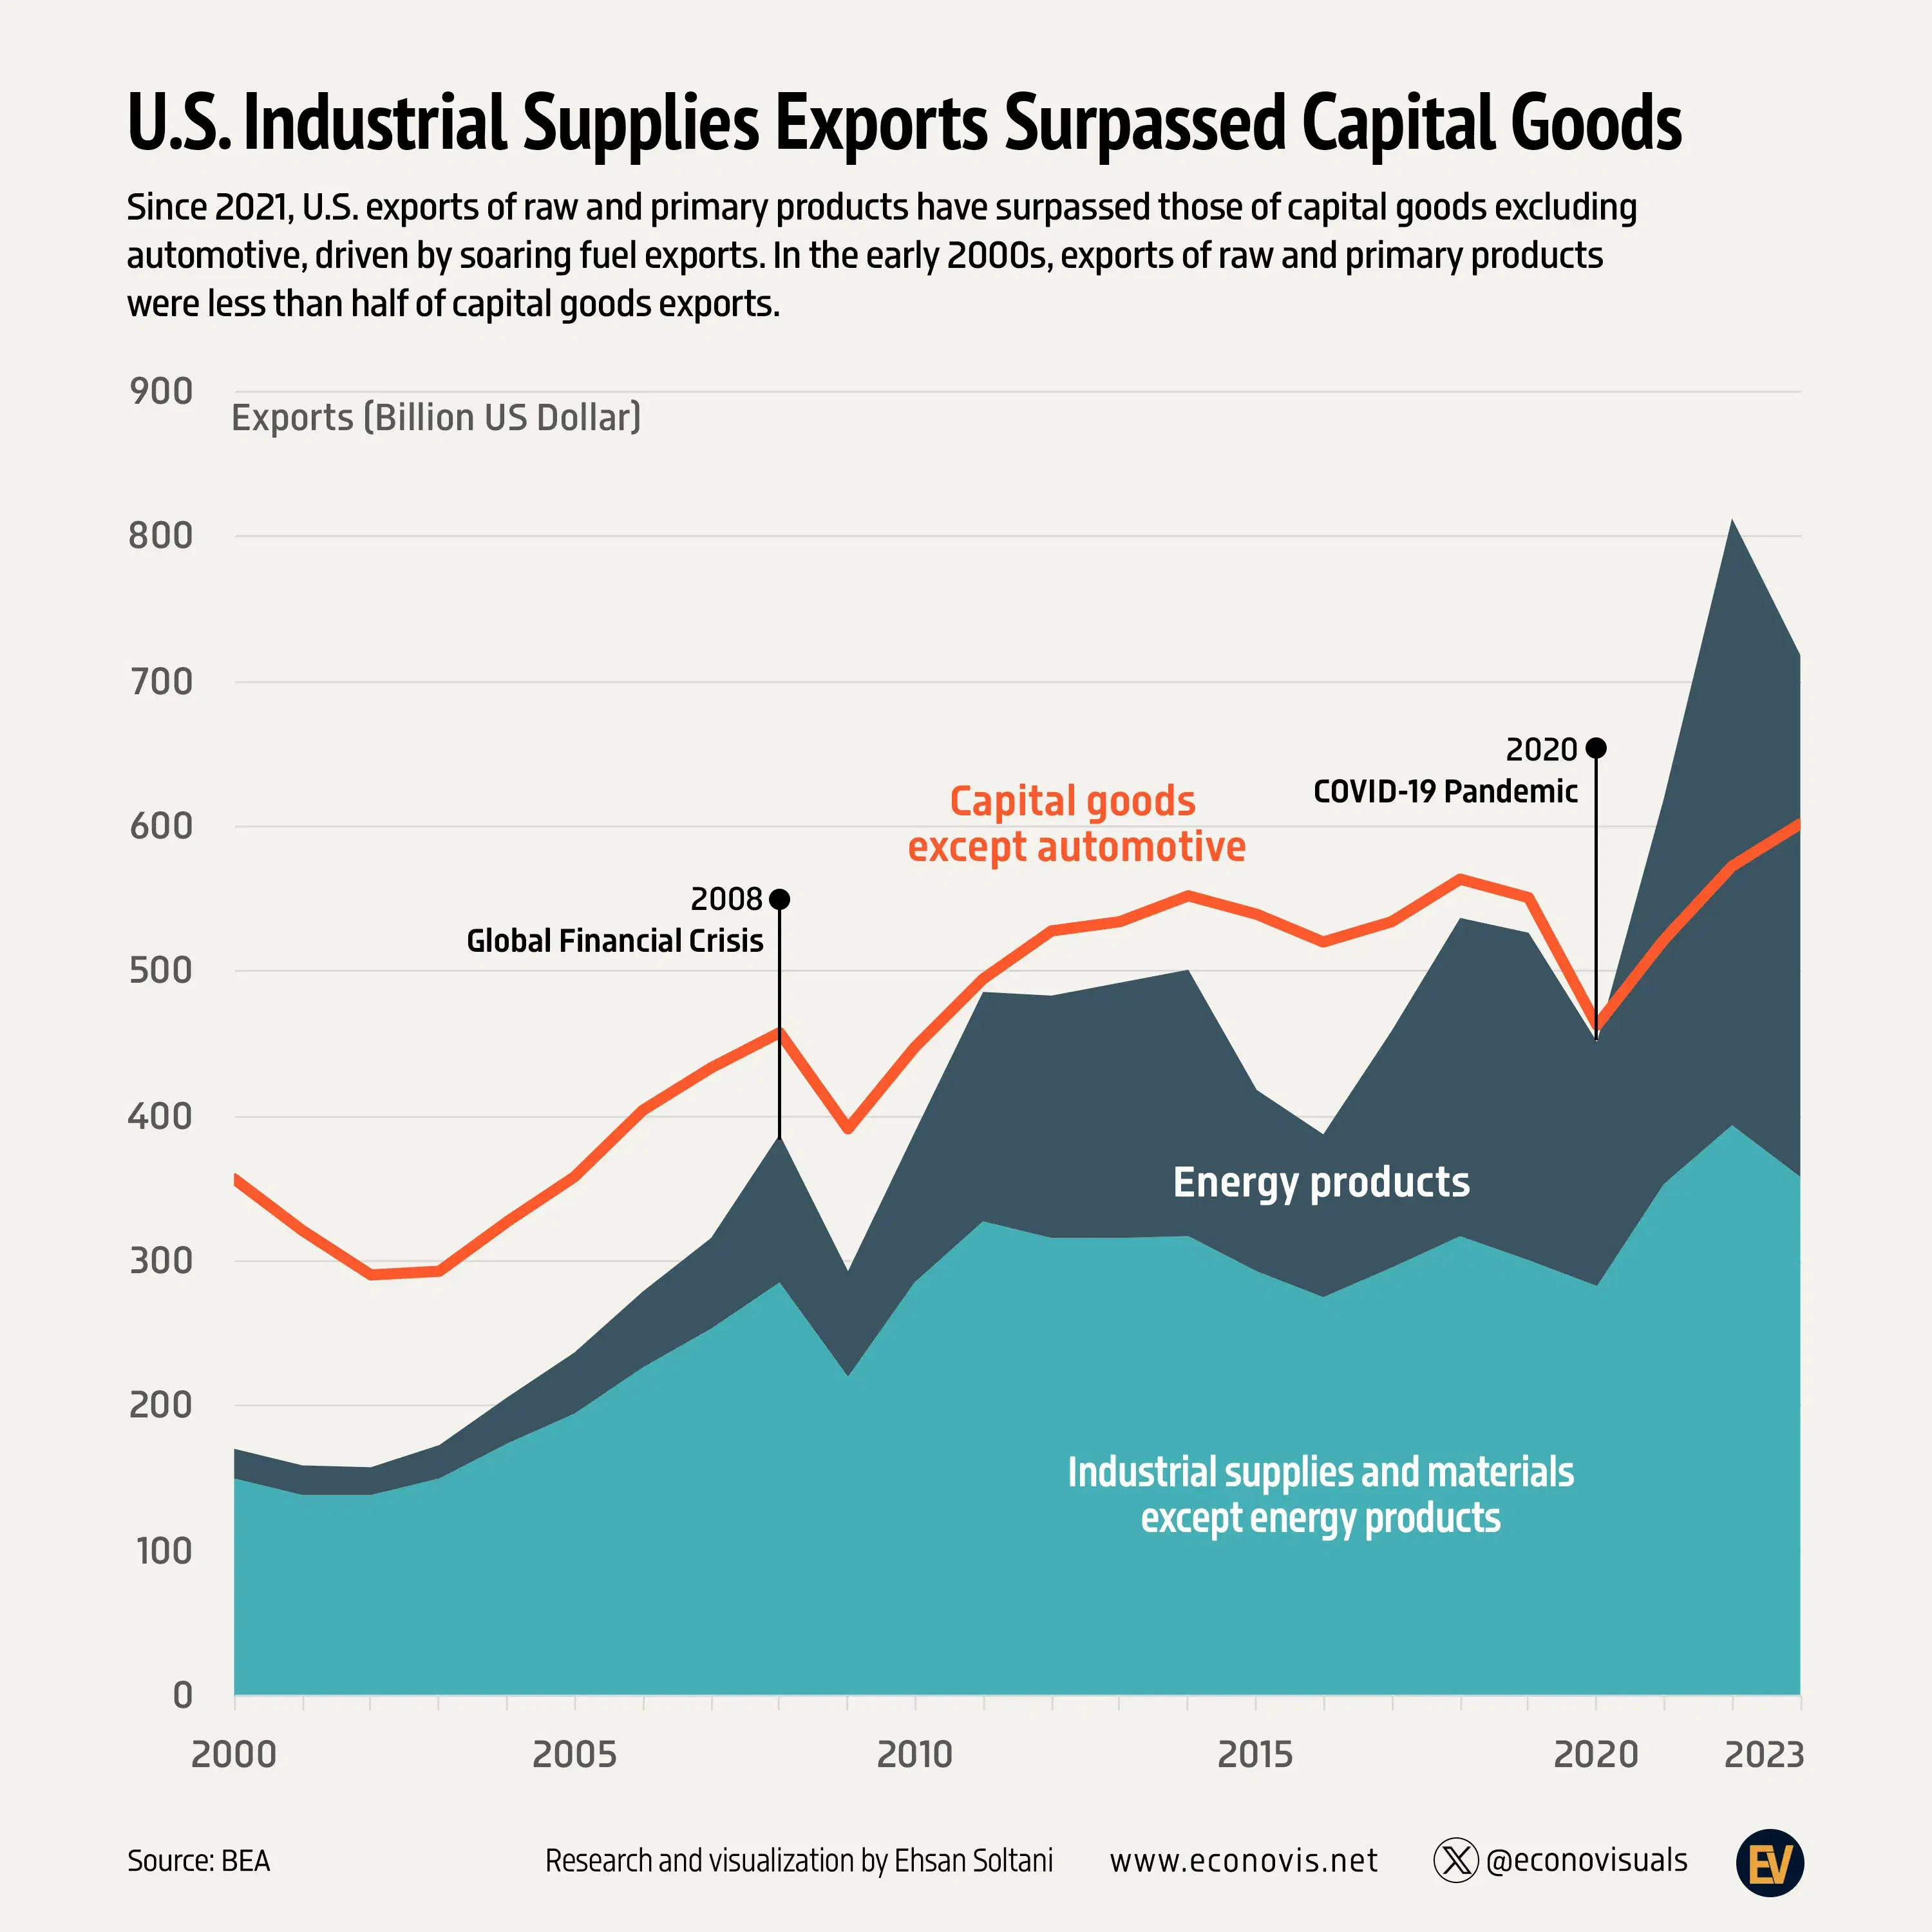 U.S. Industrial Supplies Exports Surpassed Capital Goods Exports